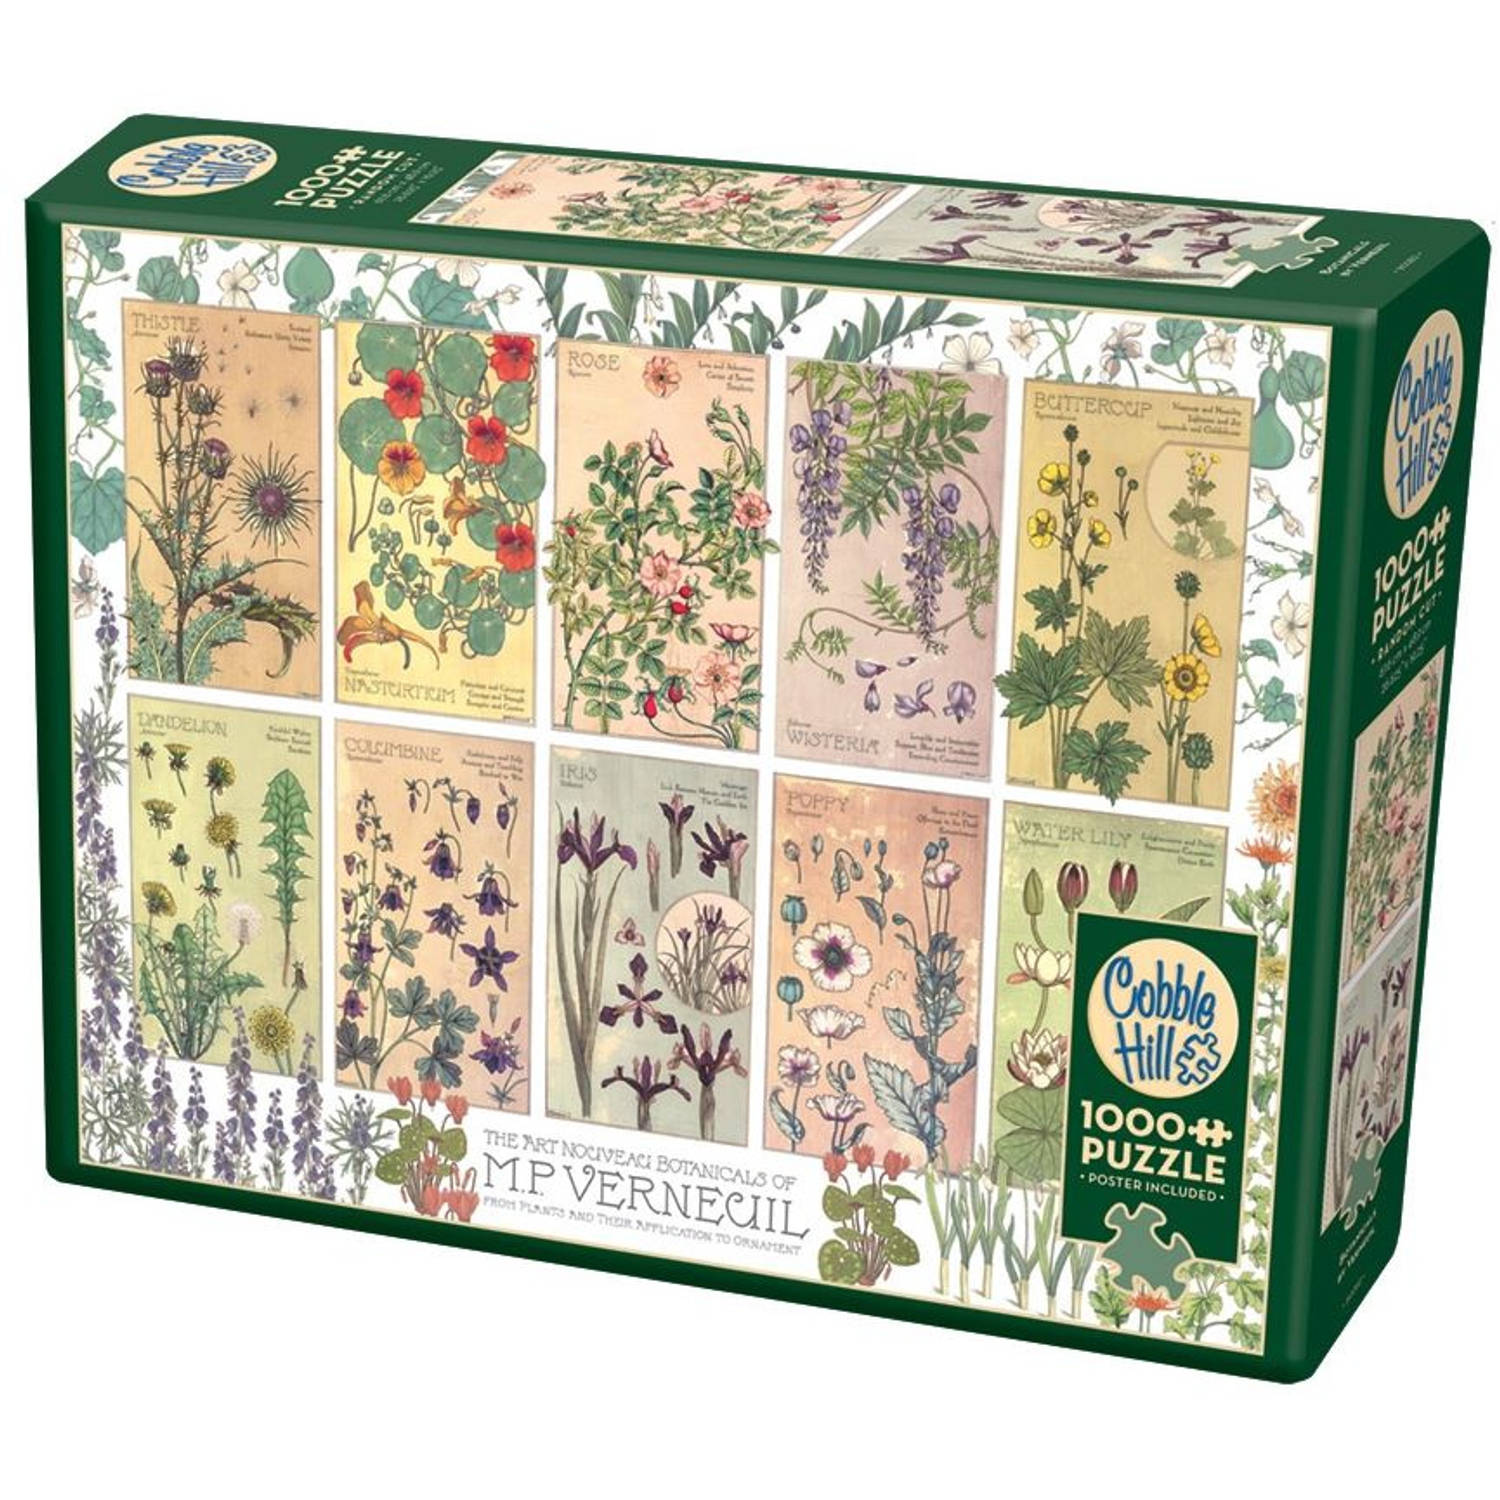 Cobble Hill puzzel Botanicals by Verneuil - 1000 stukjes